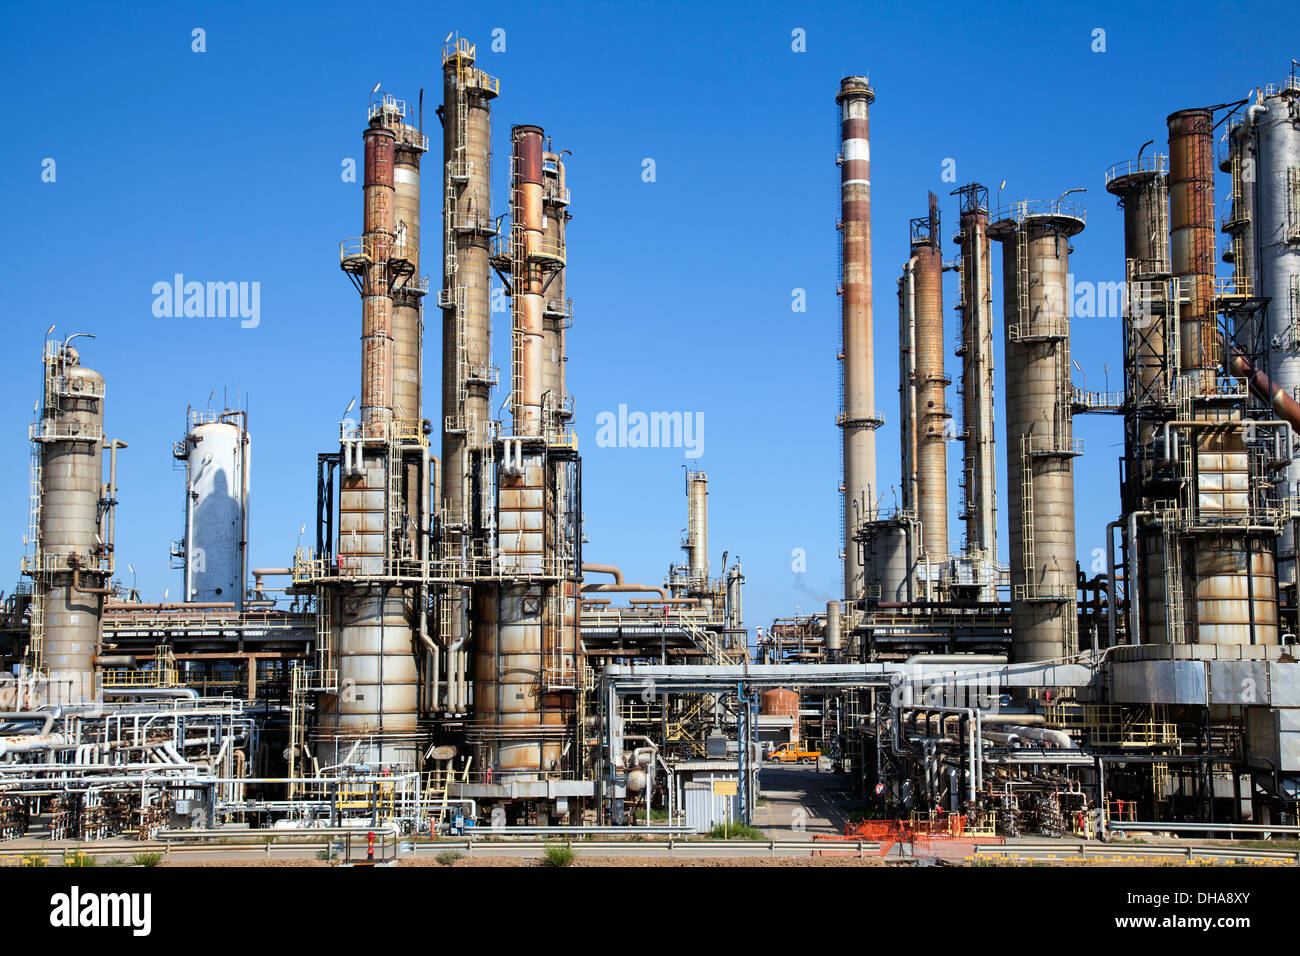 La refinería de gas entre Pula y Macchiareddu en el sur de Cerdeña - Italia Foto de stock